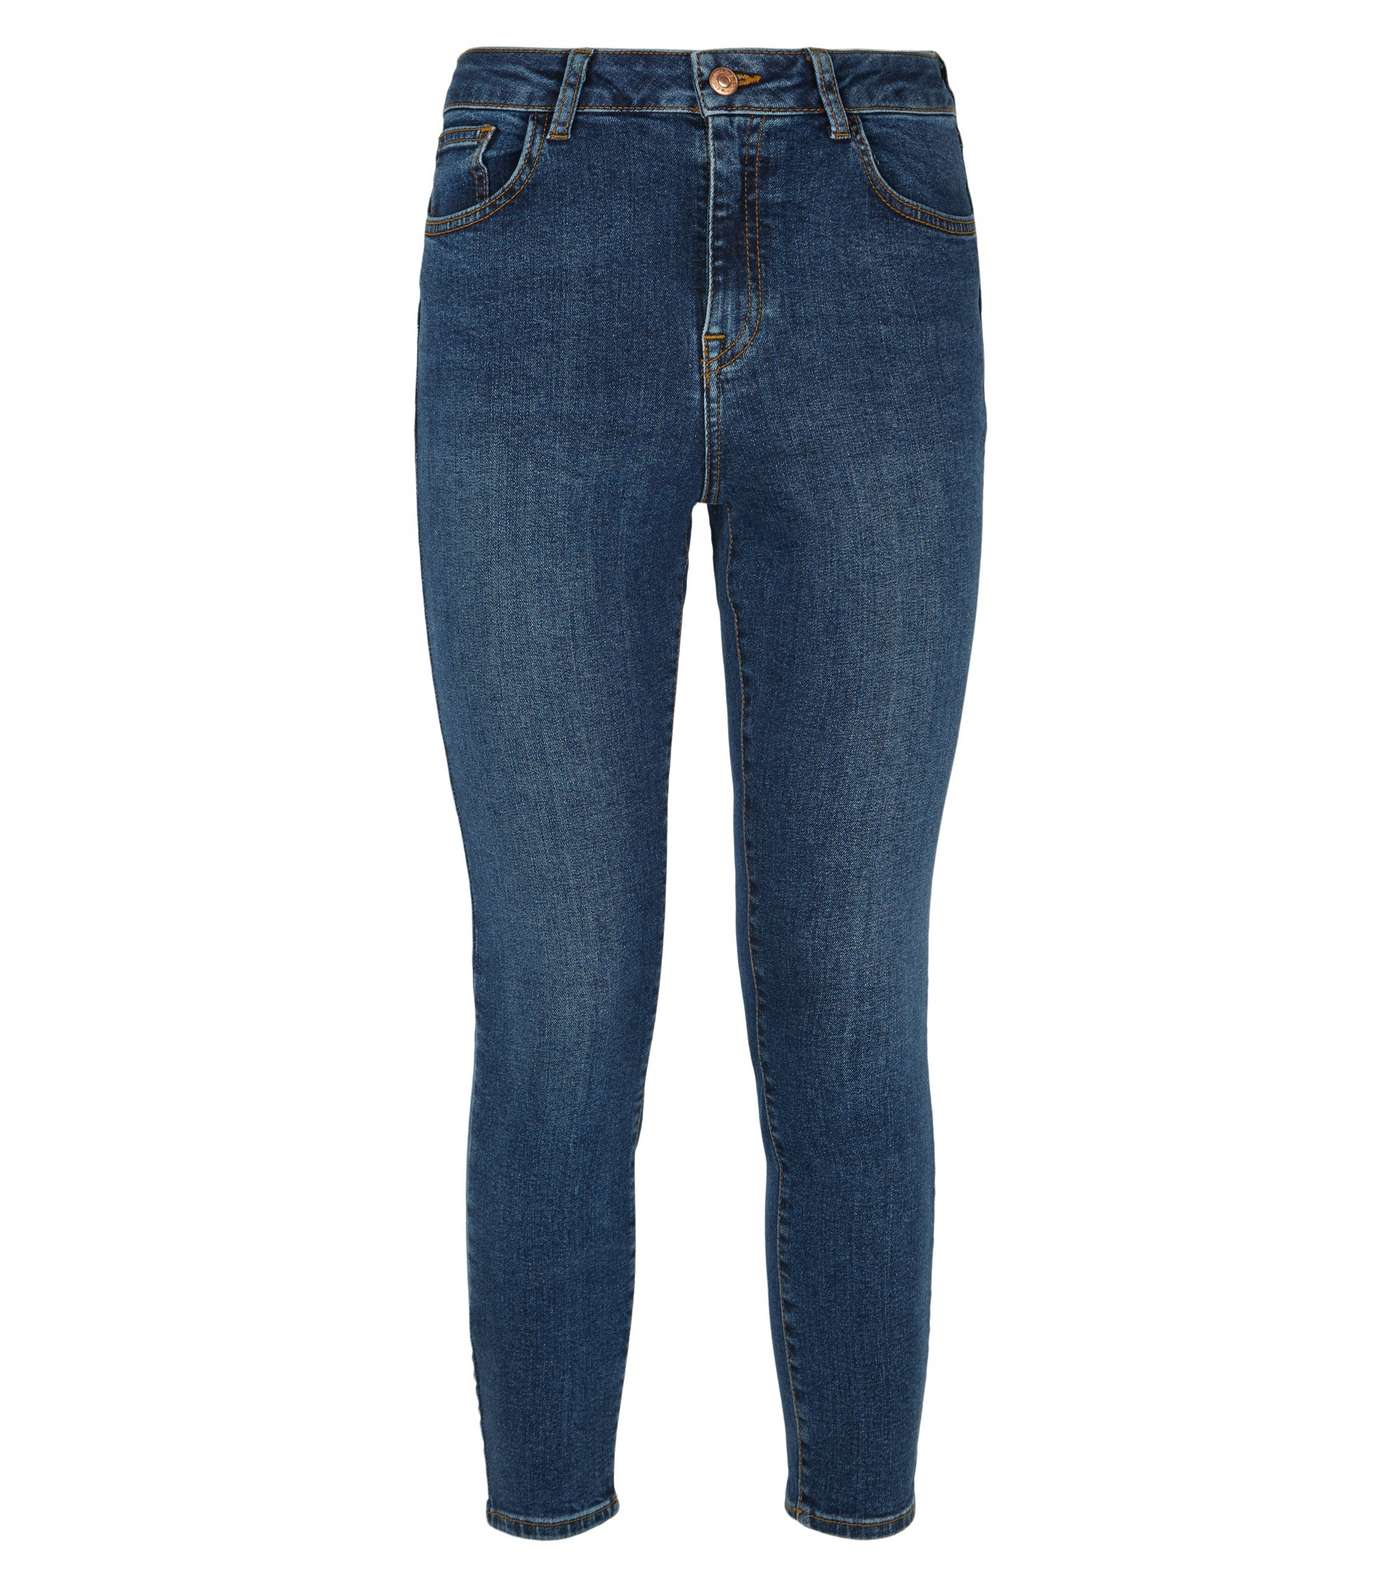 Petite Blue 'Lift & Shape' Skinny Jeans Image 4